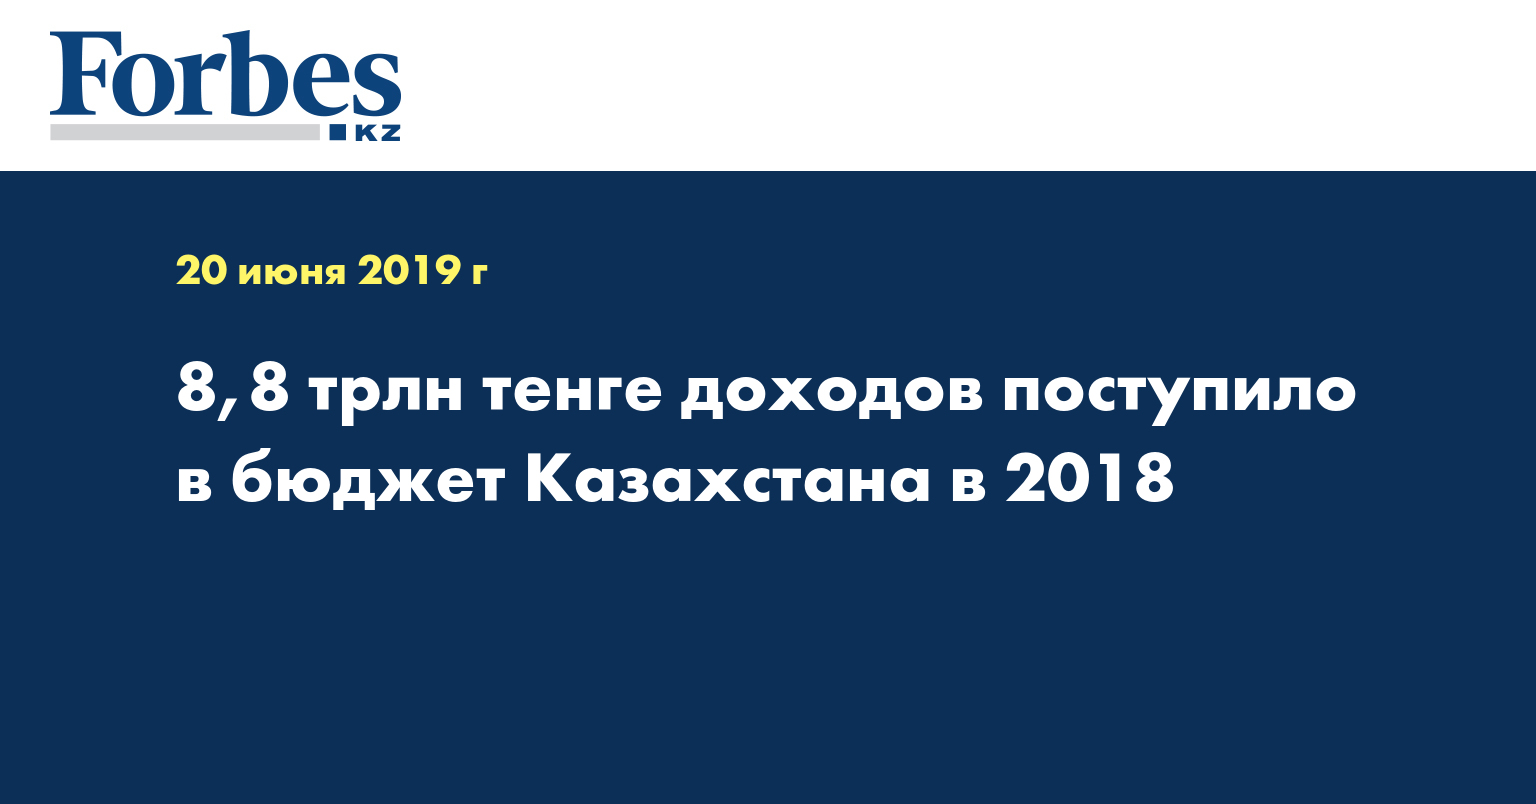 8,8 трлн тенге доходов поступило в бюджет Казахстана в 2018